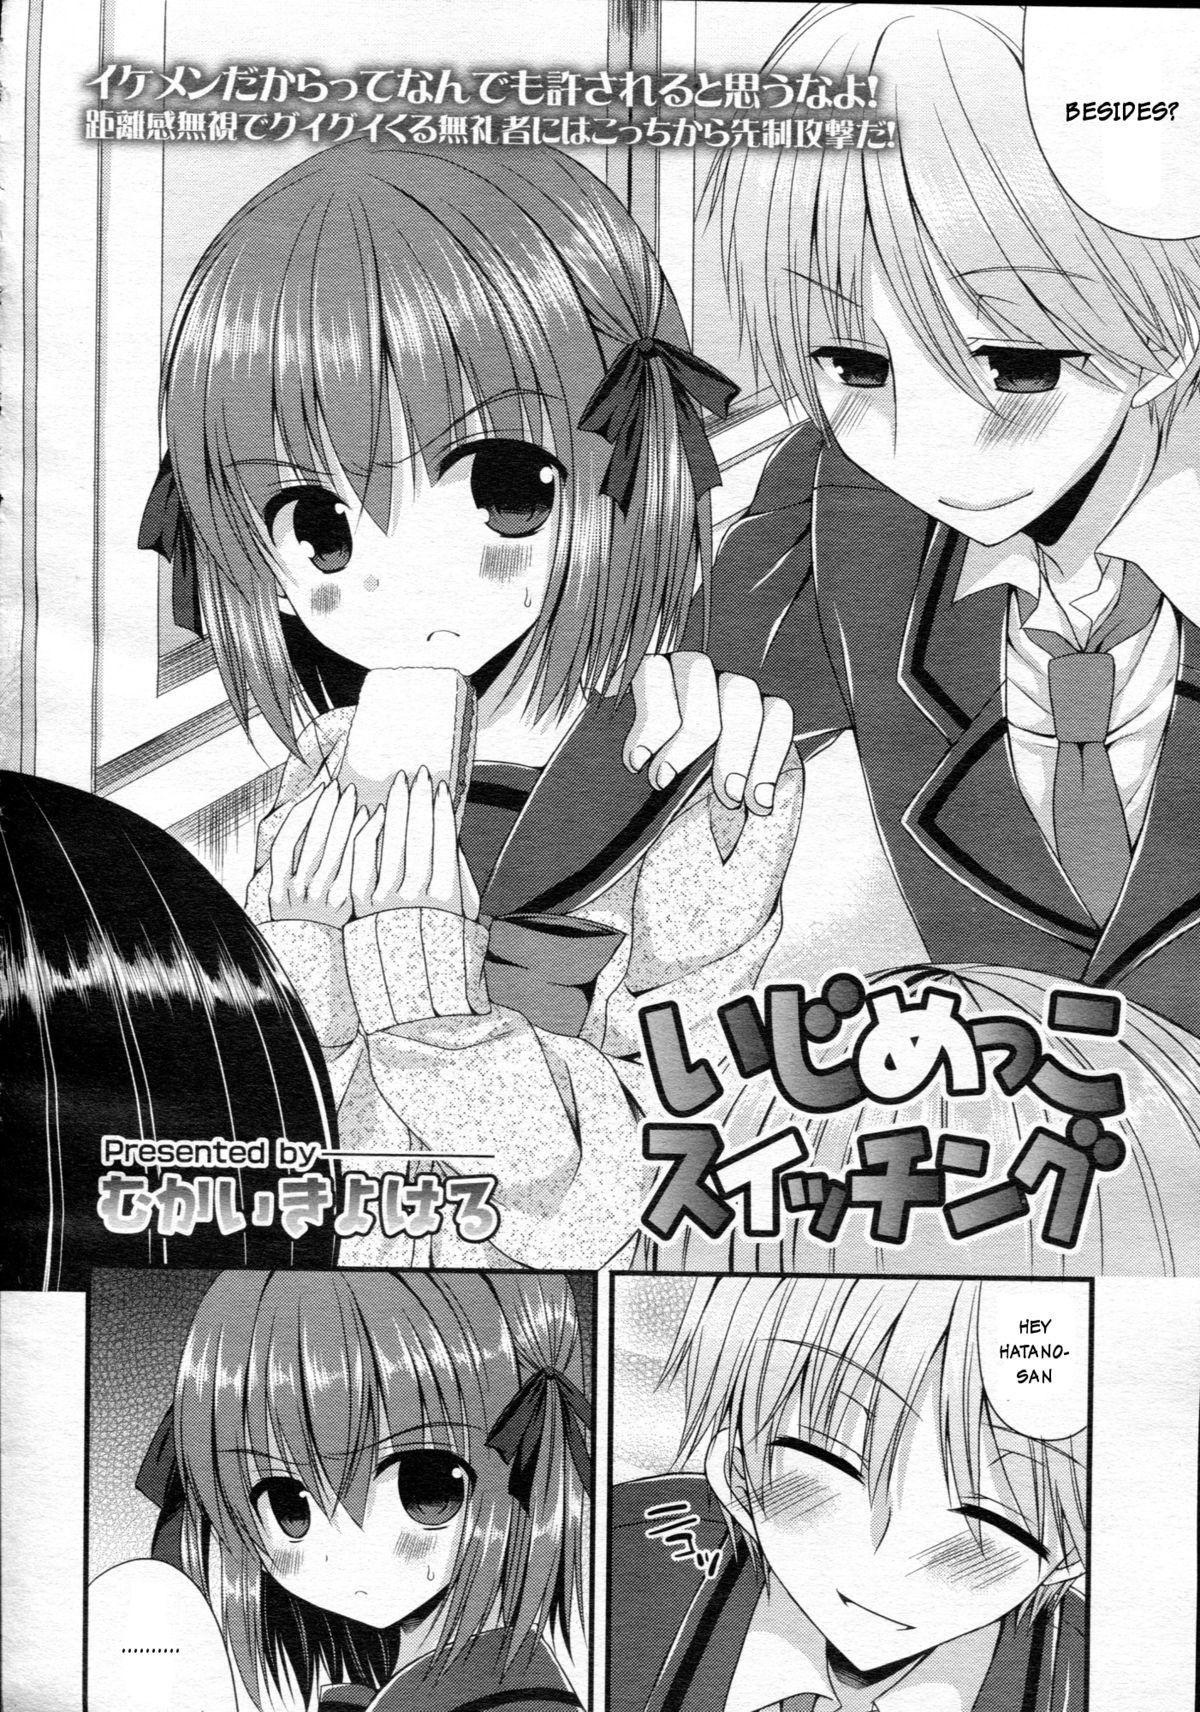 She Ijimekko Switching | Bully switching Girlfriends - Page 2